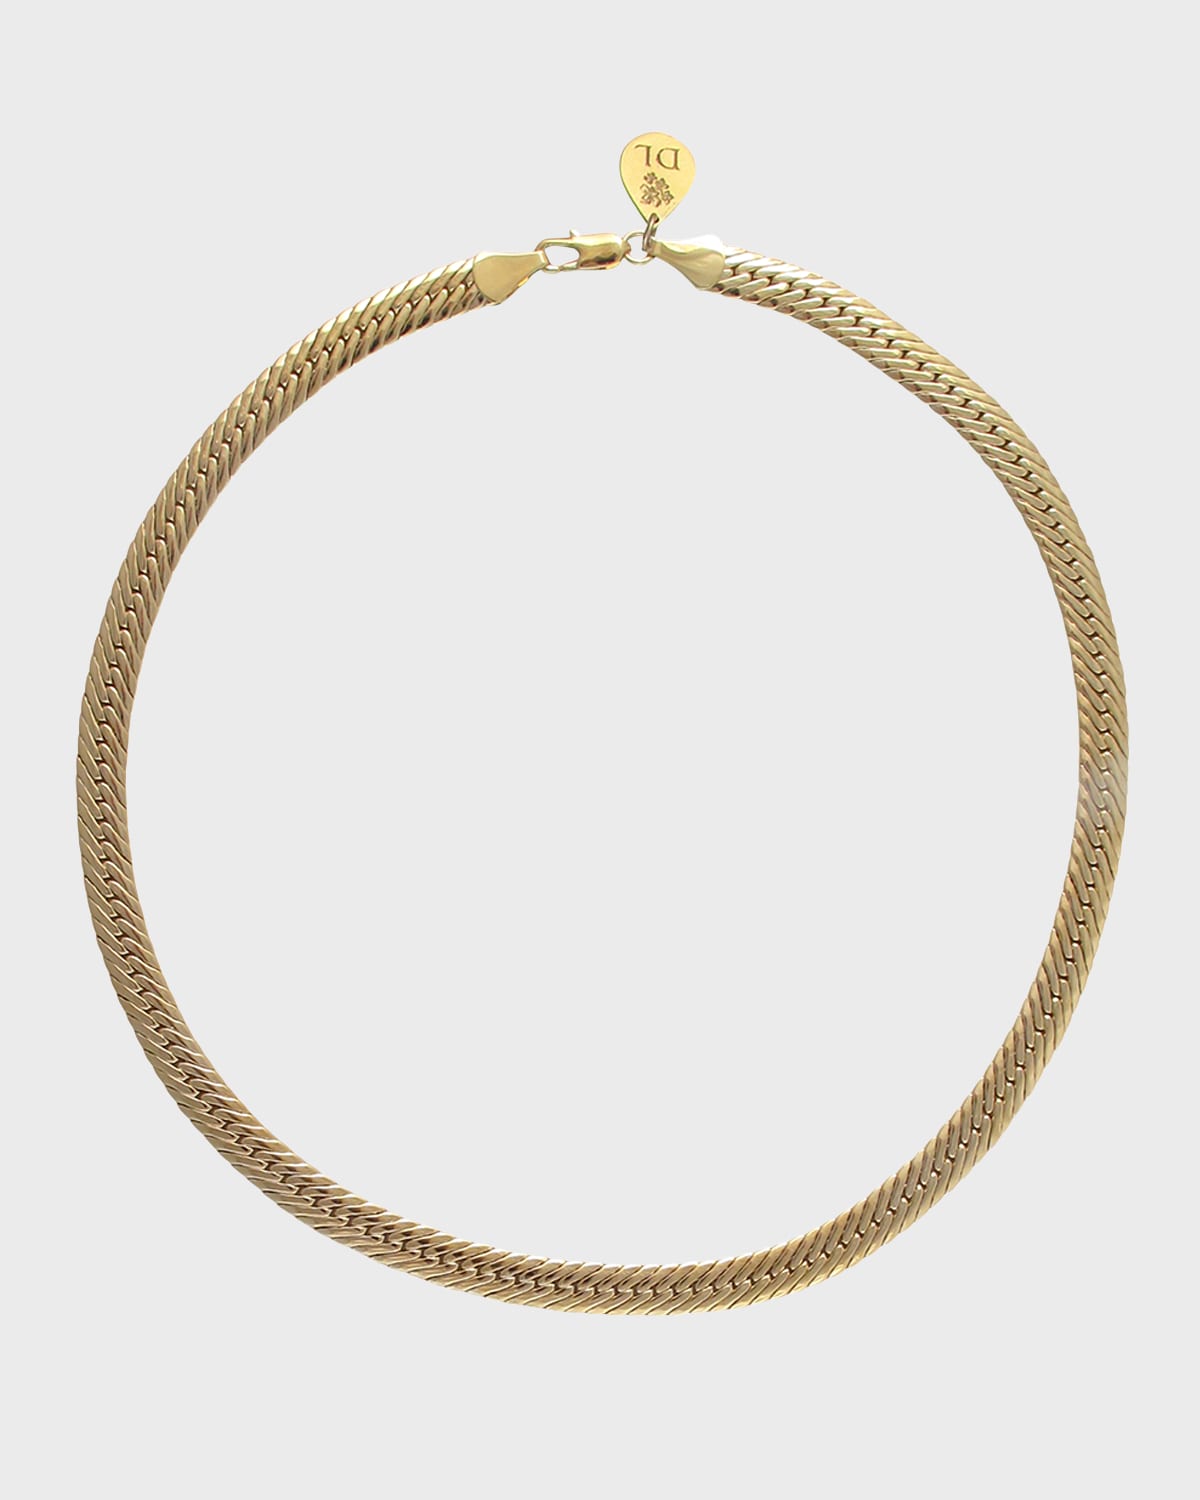 Devon Leigh Herringbone Chain Necklace